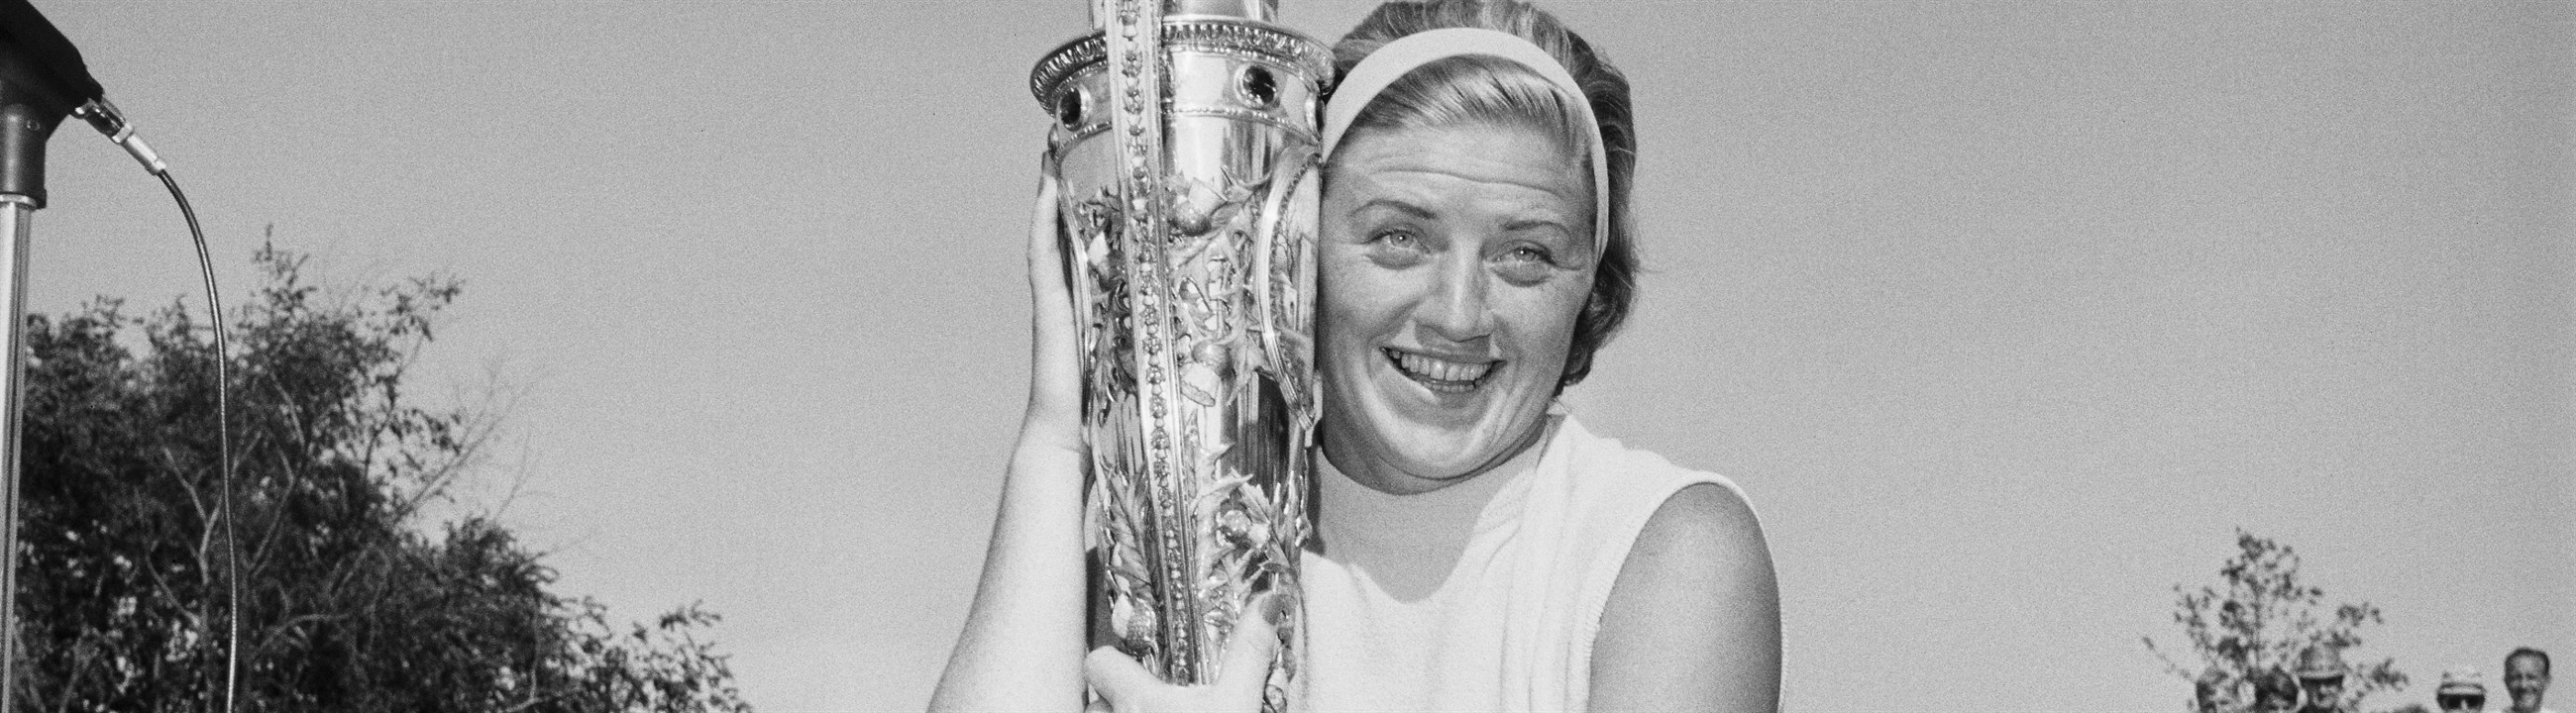 Beeld: Getty Images: voor de vijfde keer winst US Women's Amateur Championship voor de vijfde keer 1968